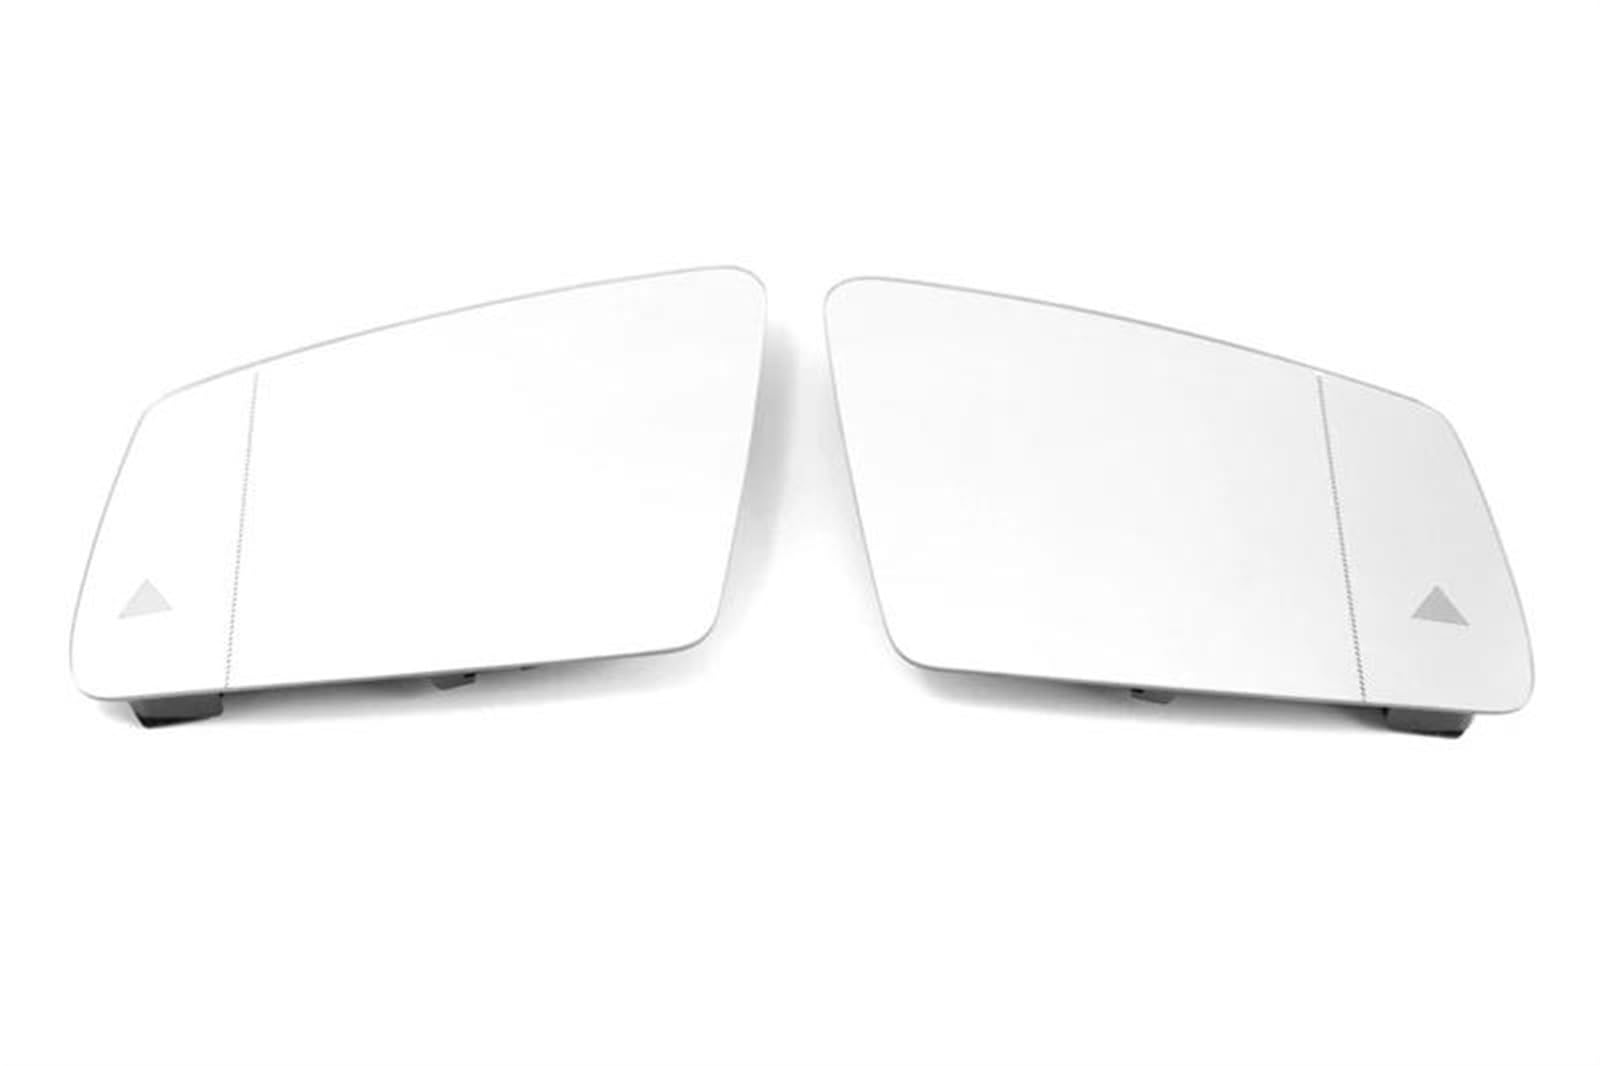 Körperzubehör Türaußenspiegelglas Seitenspiegellinse Beheiztes Spiegelglas Für S W221 S350 S400 S450 S500 S550 S560 S600 2011 2012 2013(Left-a) von BAYDE